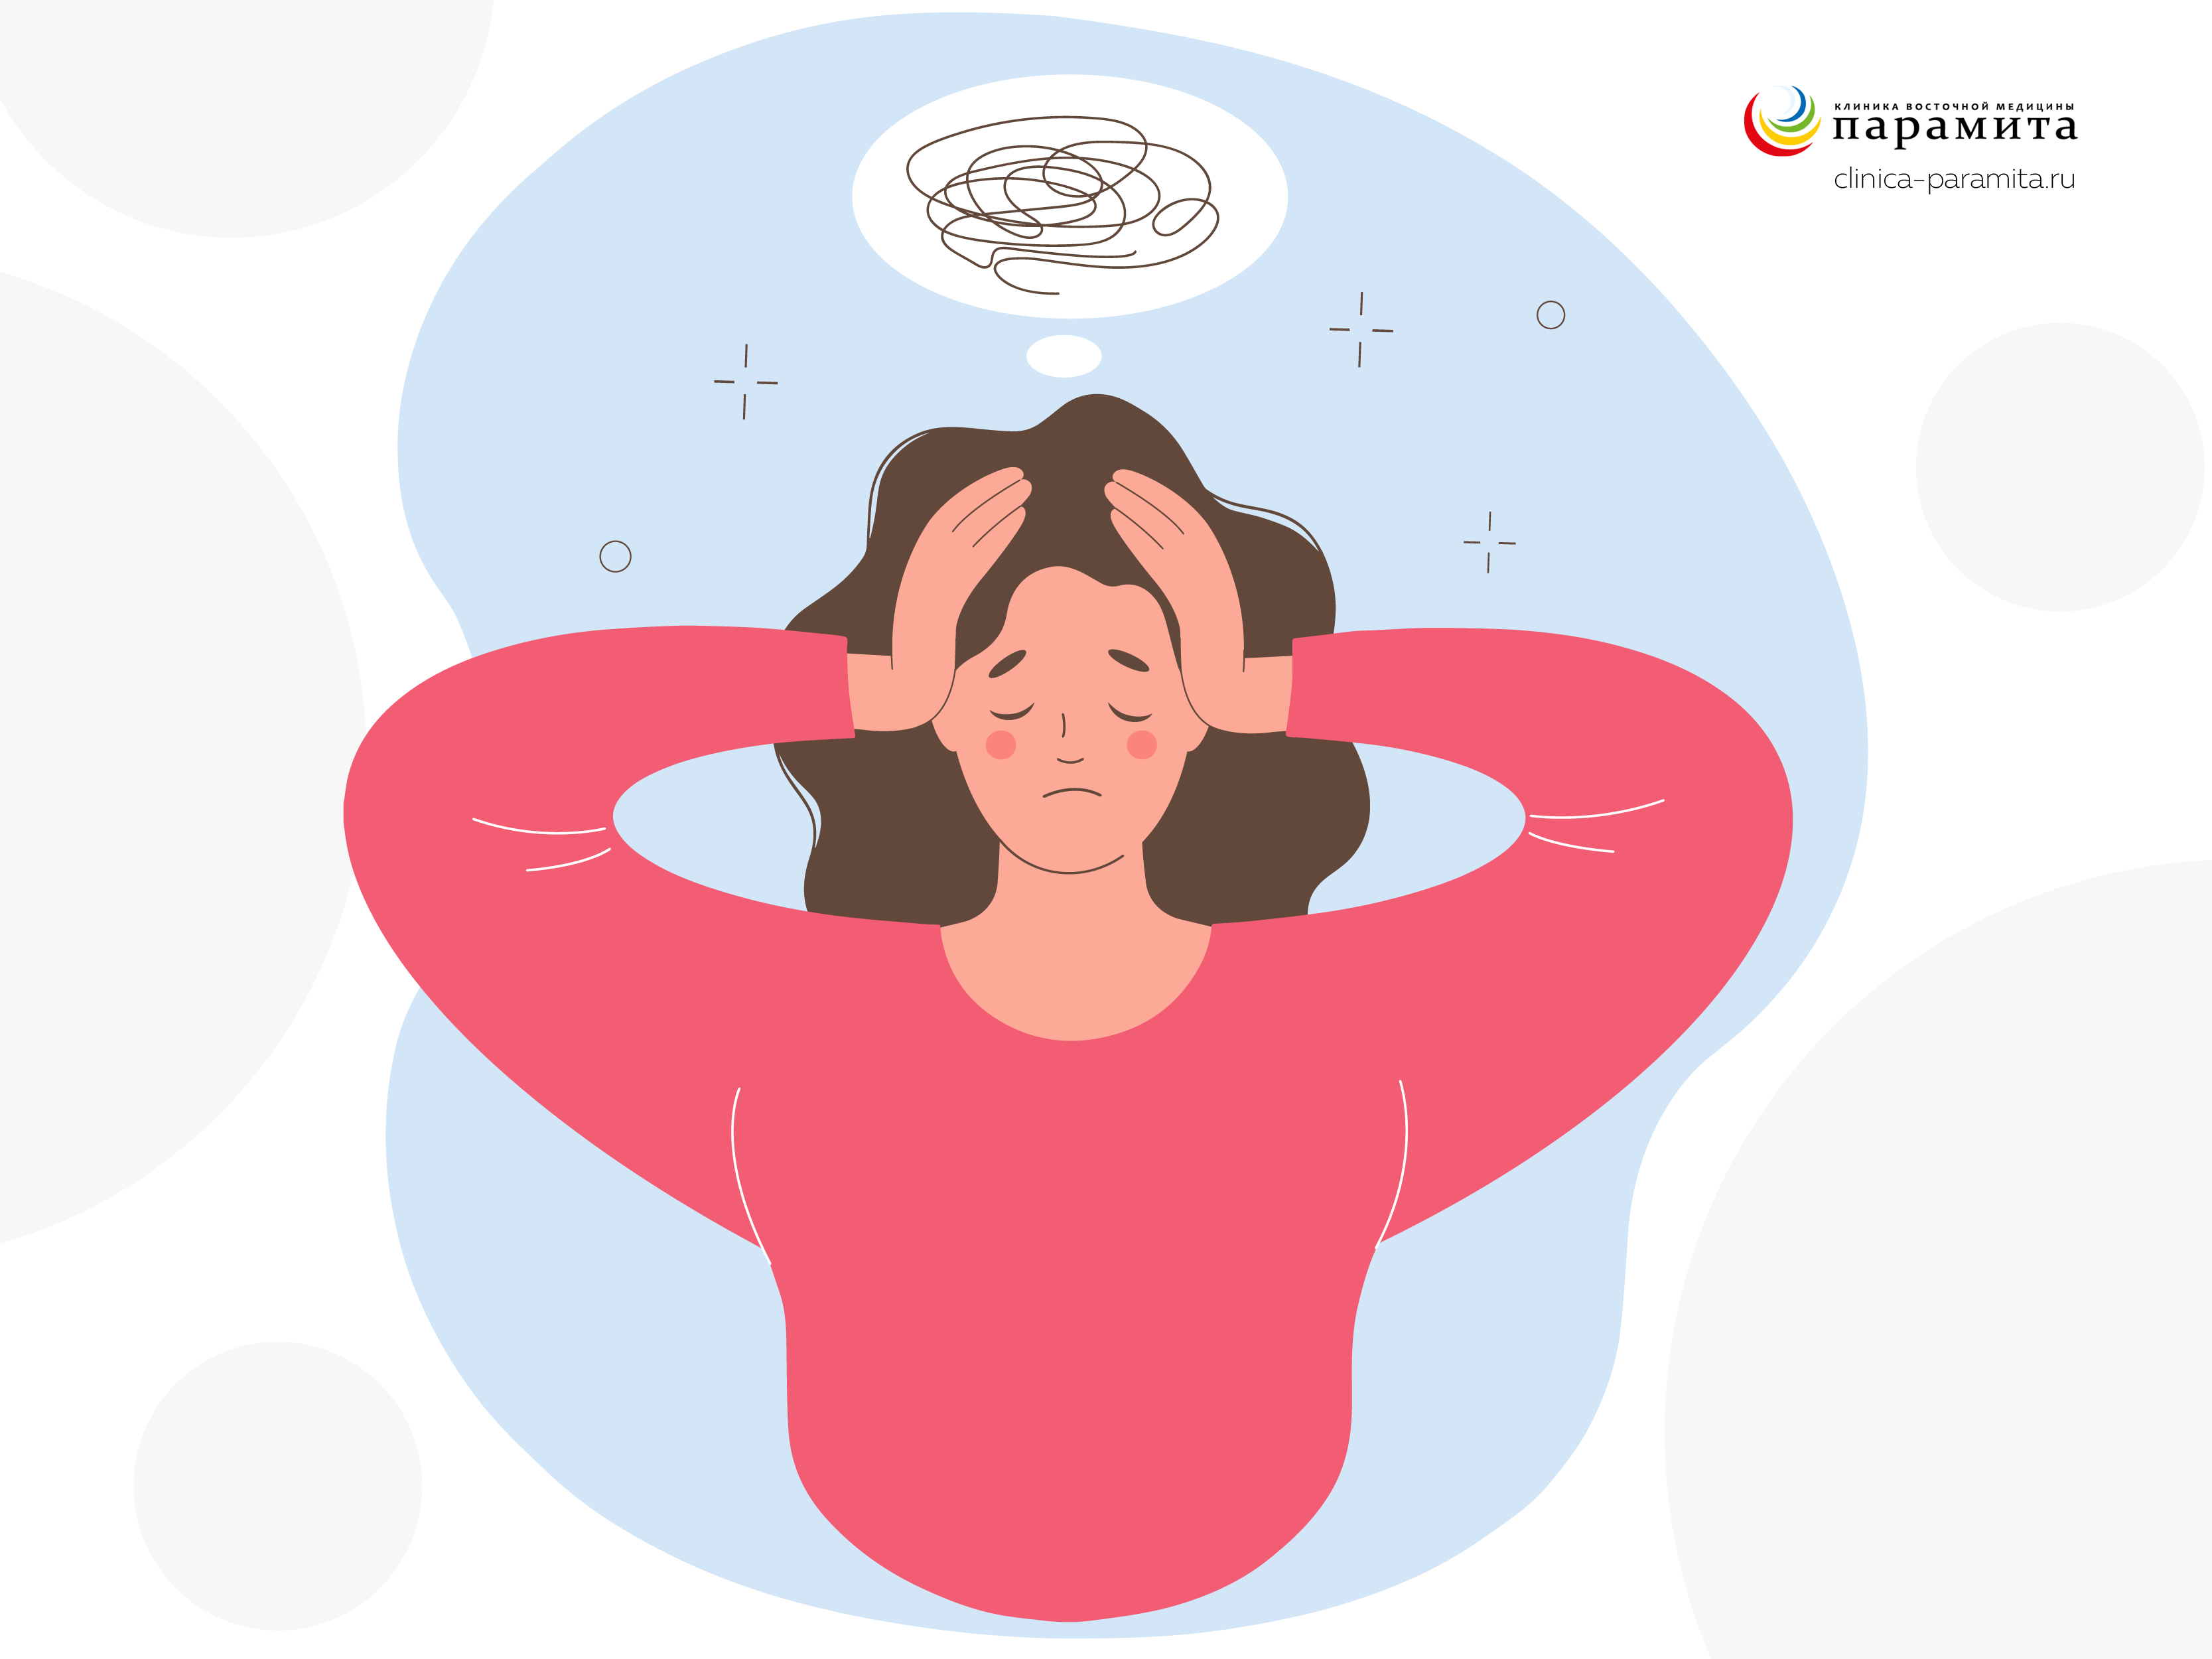 Стрессы - основная причина синдрома хронической усталости